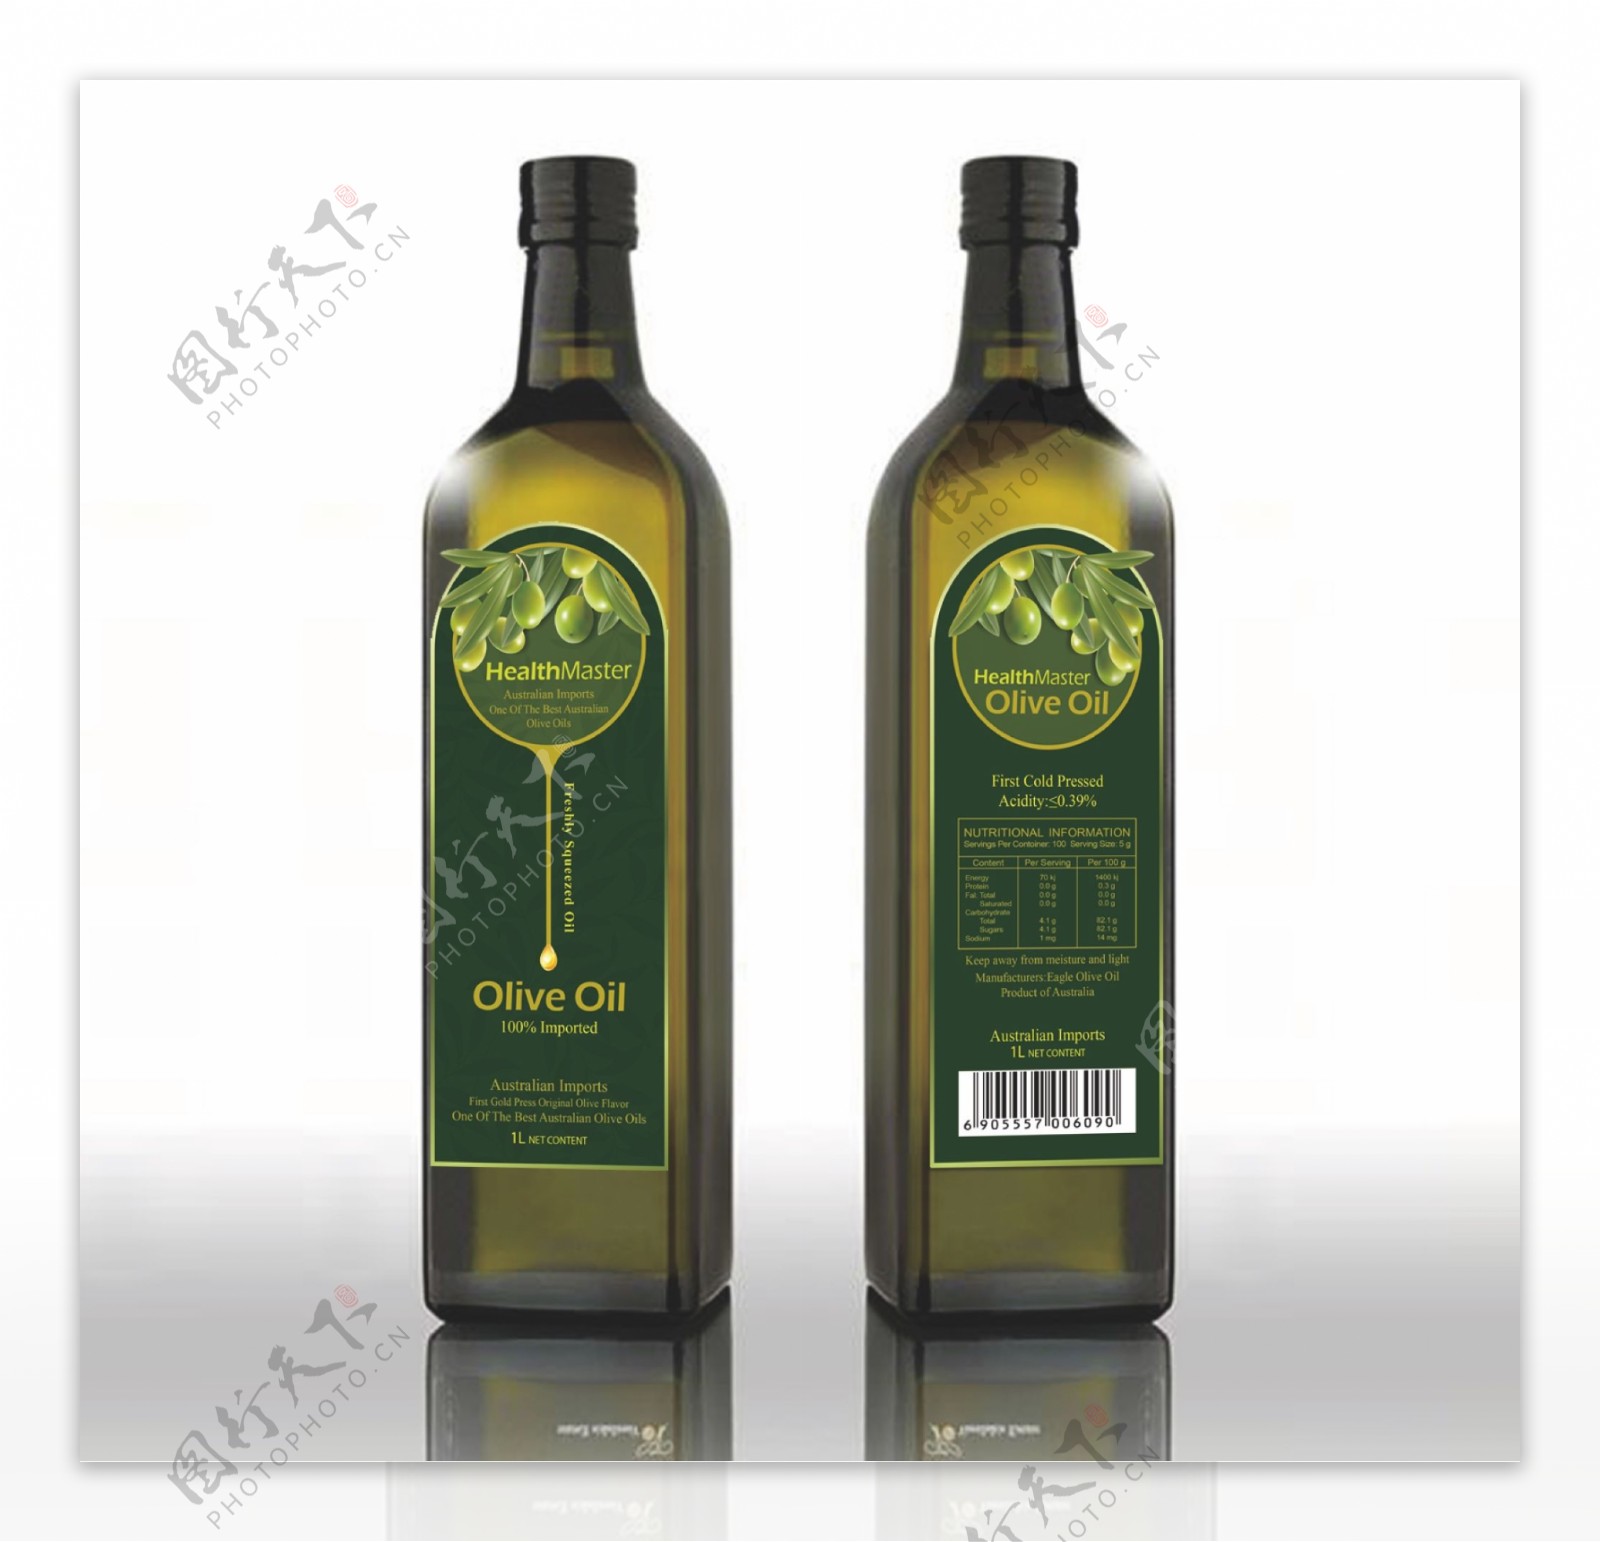 橄榄油包装图片